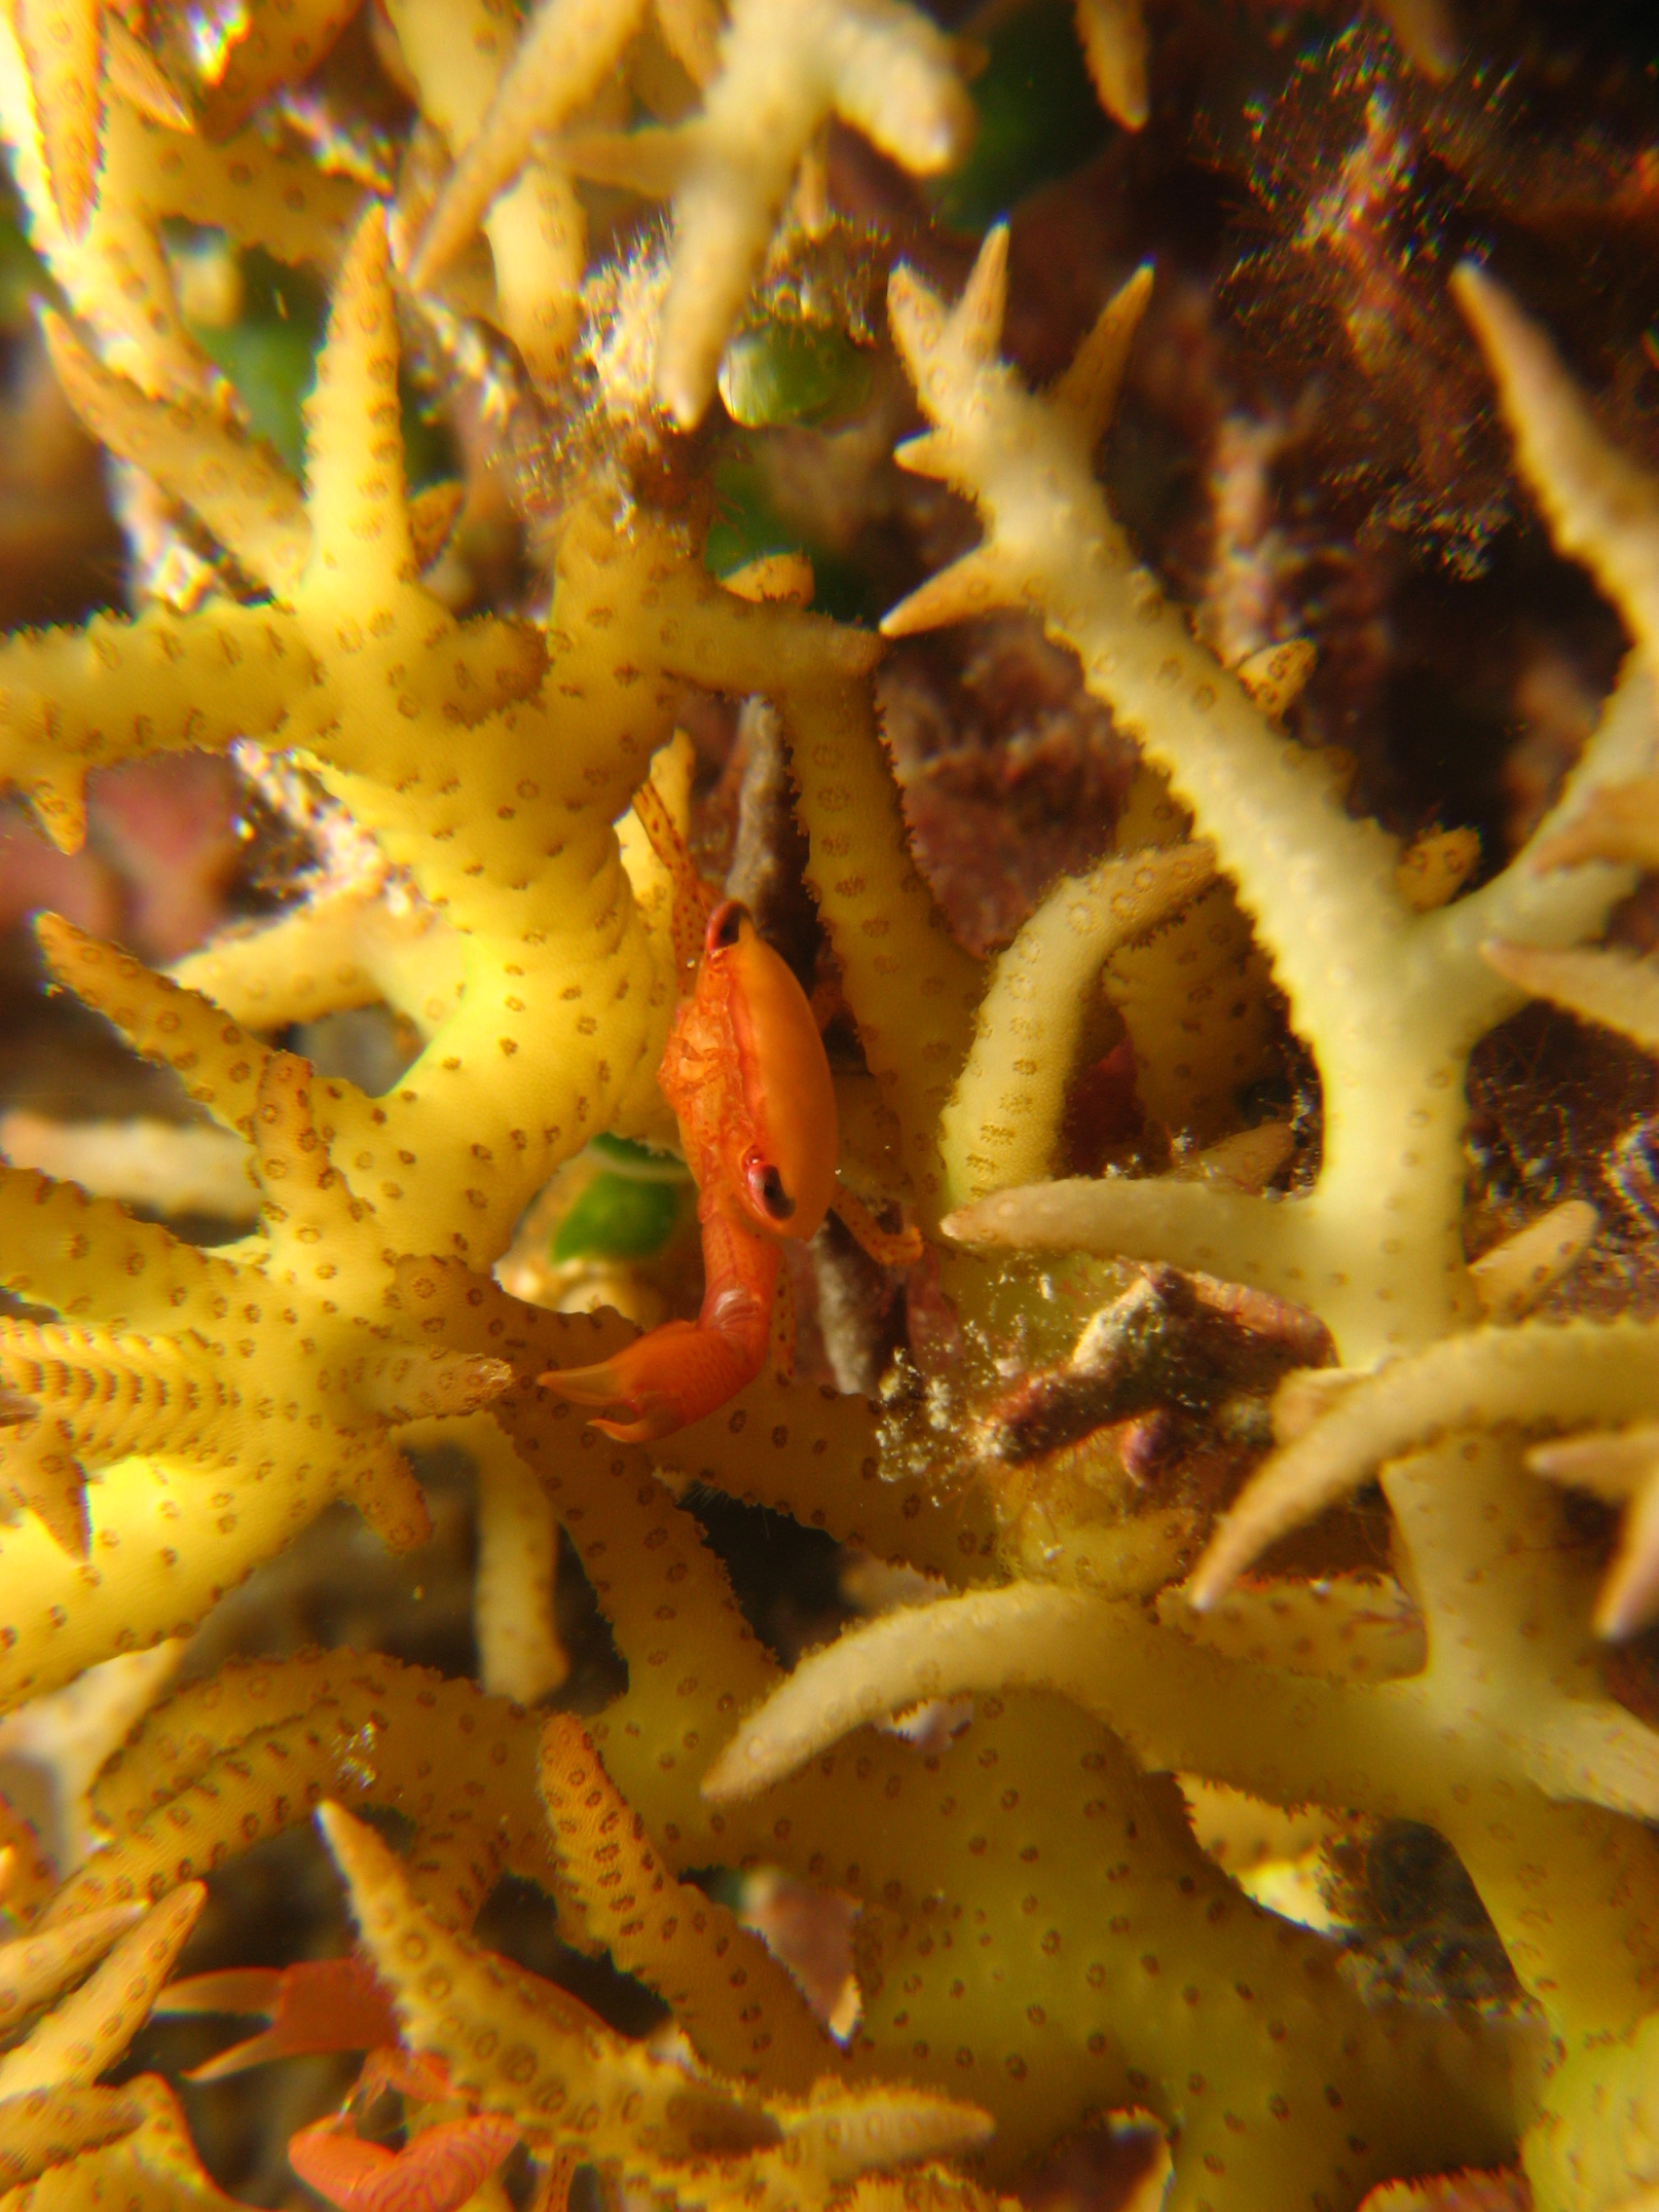 Coral Crab, trapezia lutea?